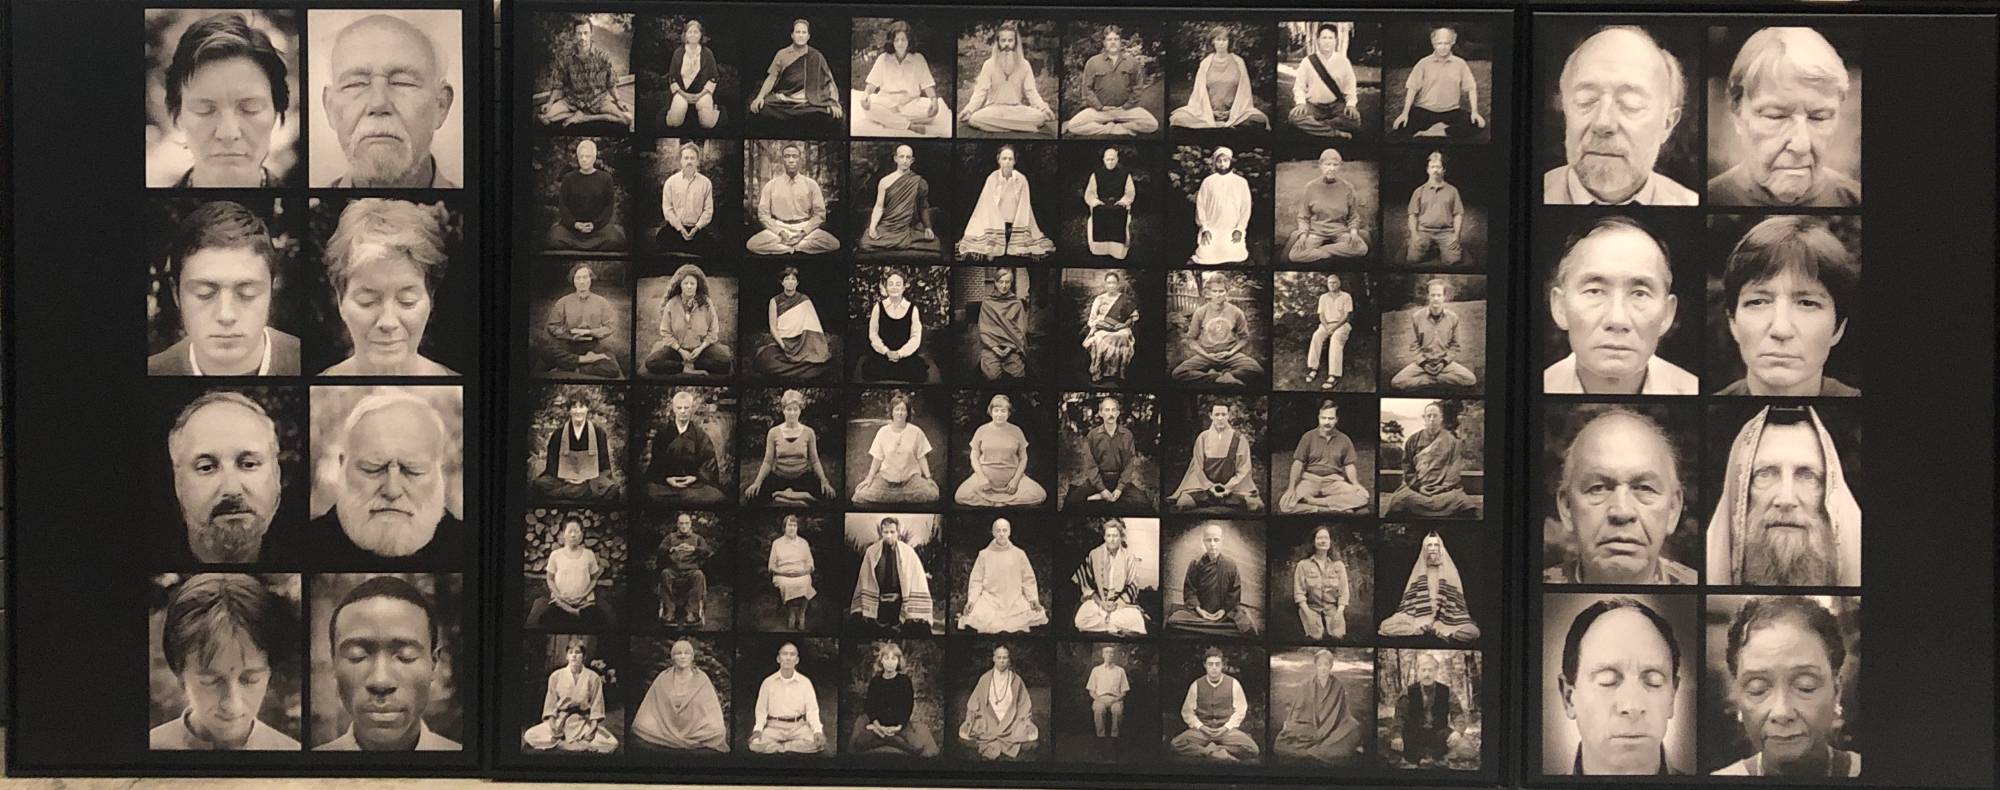 multiple portraits of people meditating